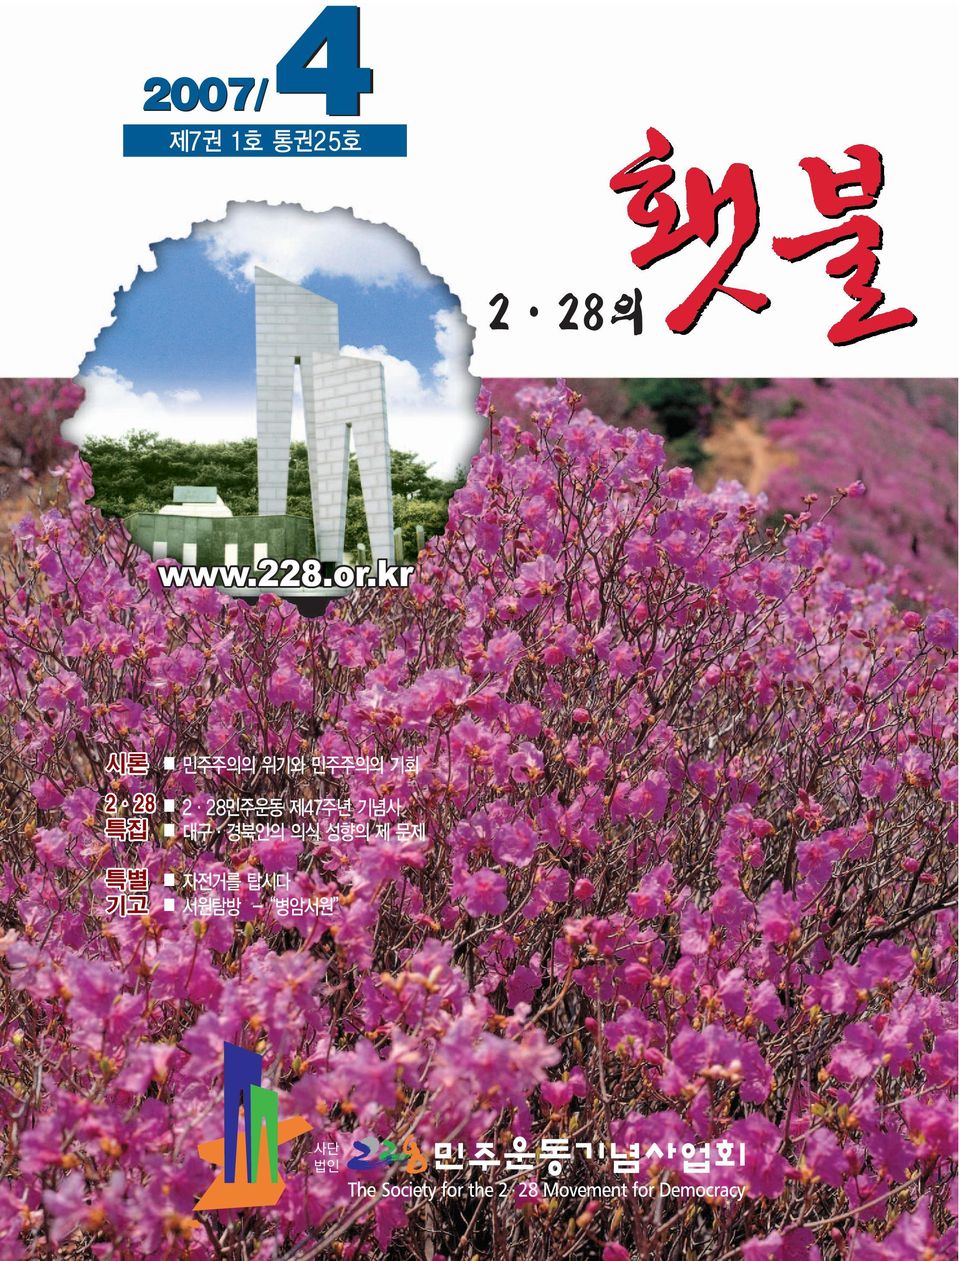 2 28민주운동 제47주년 기념사 특집 대구 경북인의 의식 성향의 제